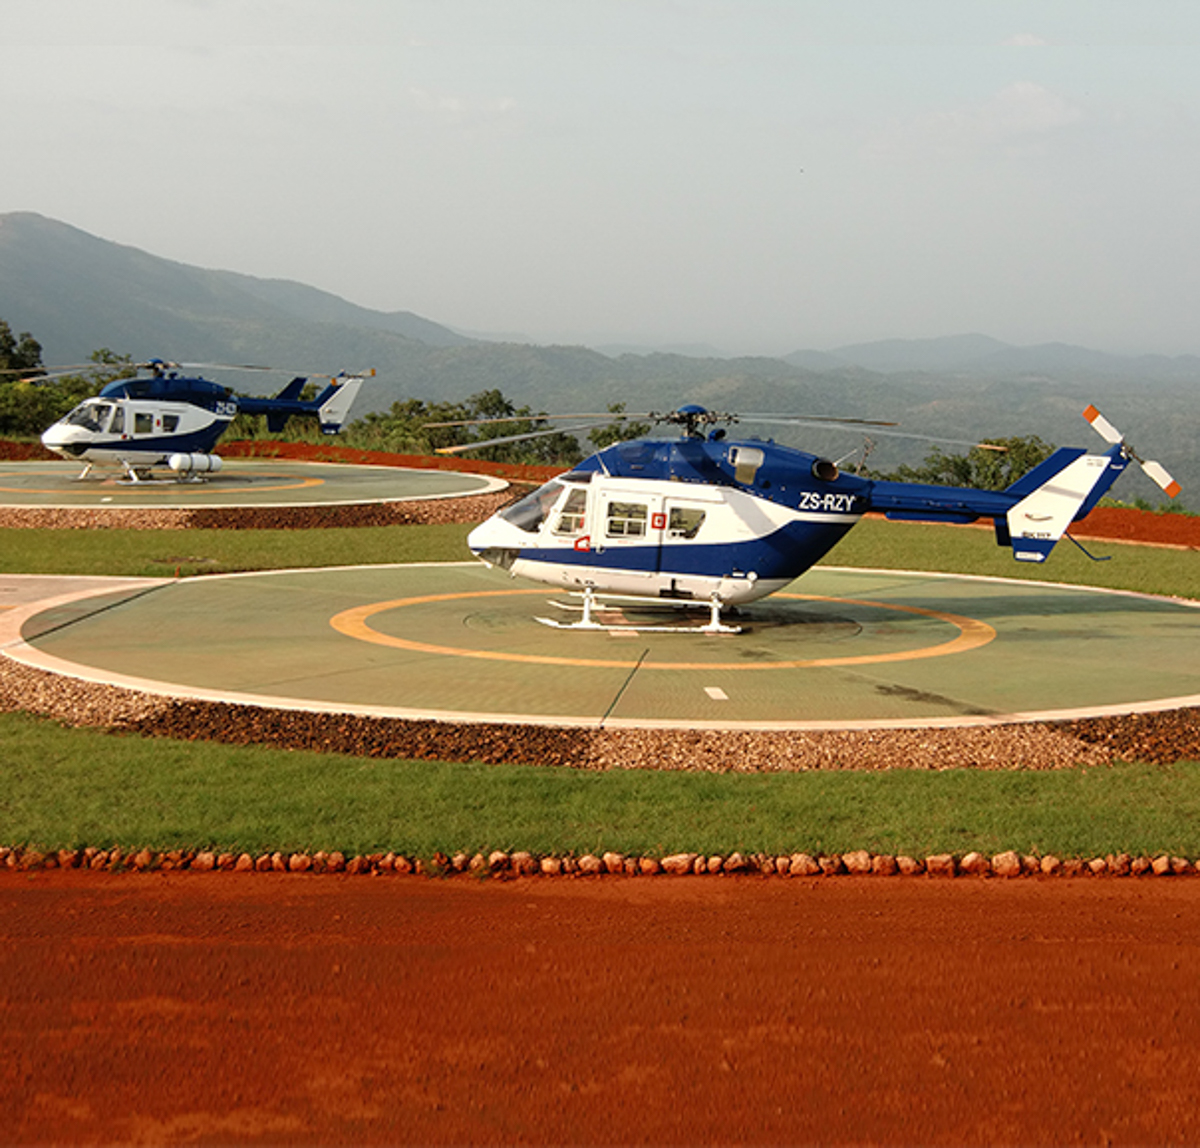 bk117 helicopter mods, design, stc, cockpit upgrade, 850 engine